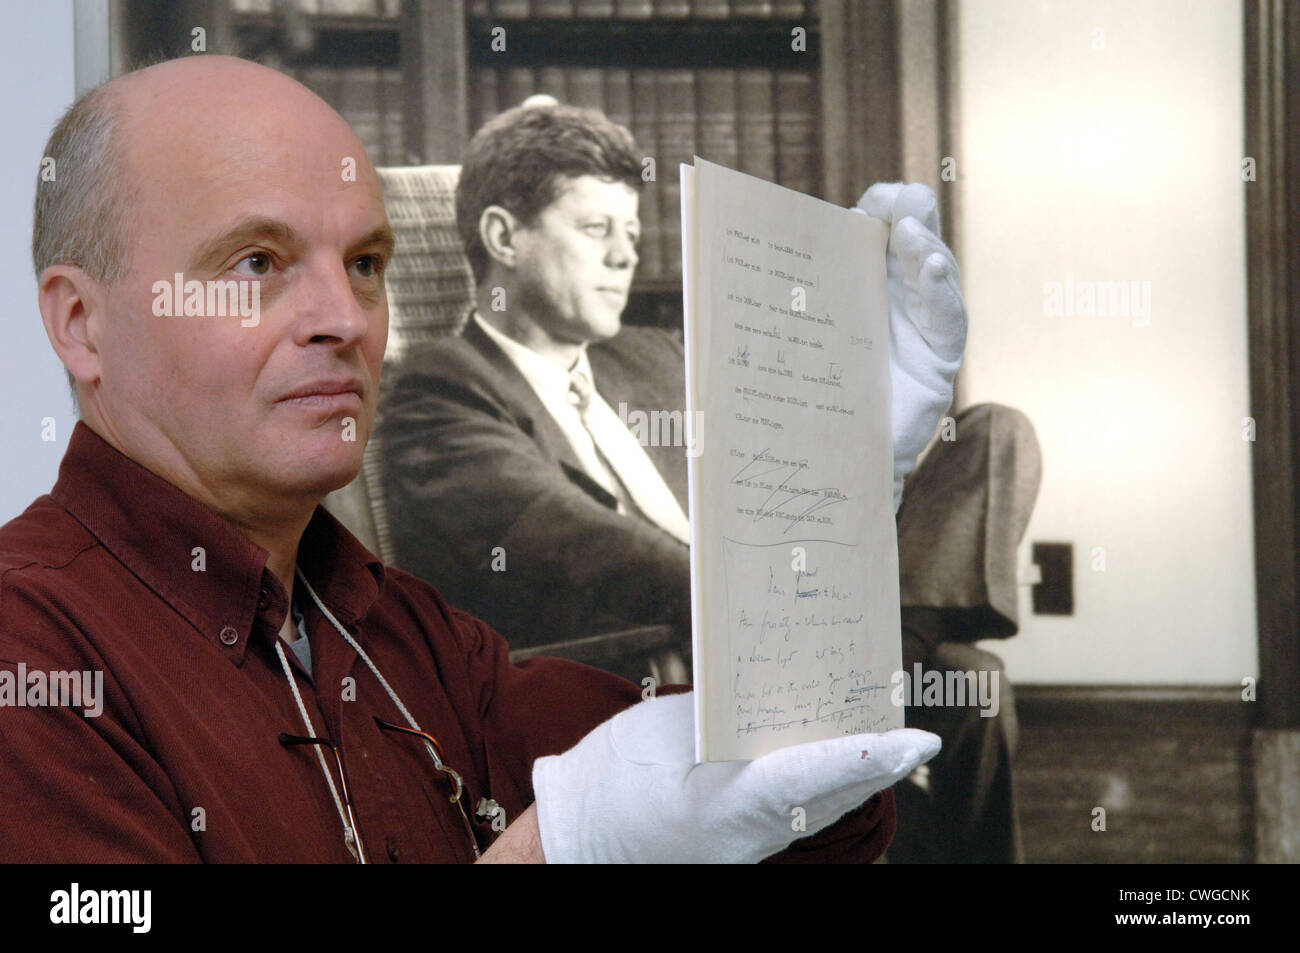 Berlín, el manuscrito de Kennedy habla de Berlín Foto de stock